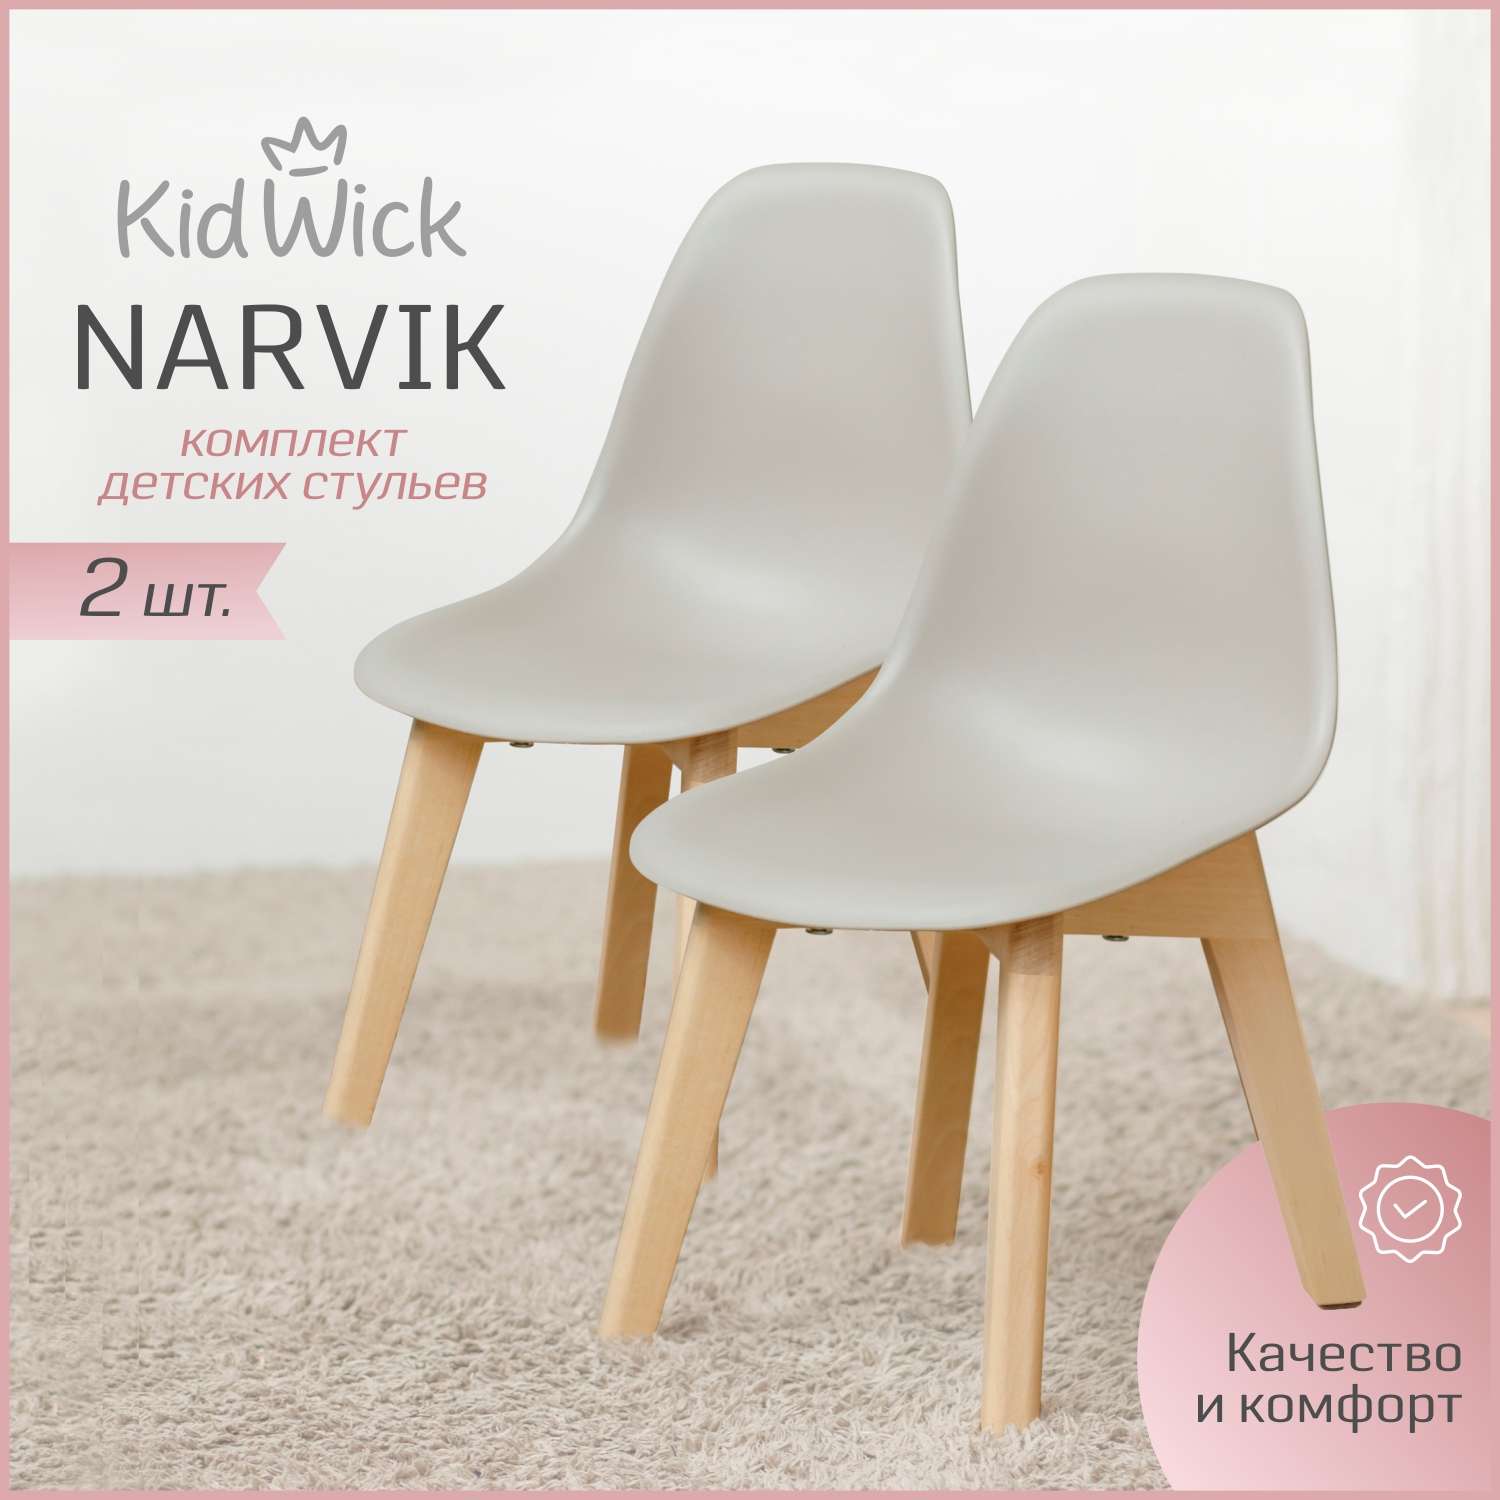 Набор стульев скандинавских KidWick Narvik пепельный - фото 1